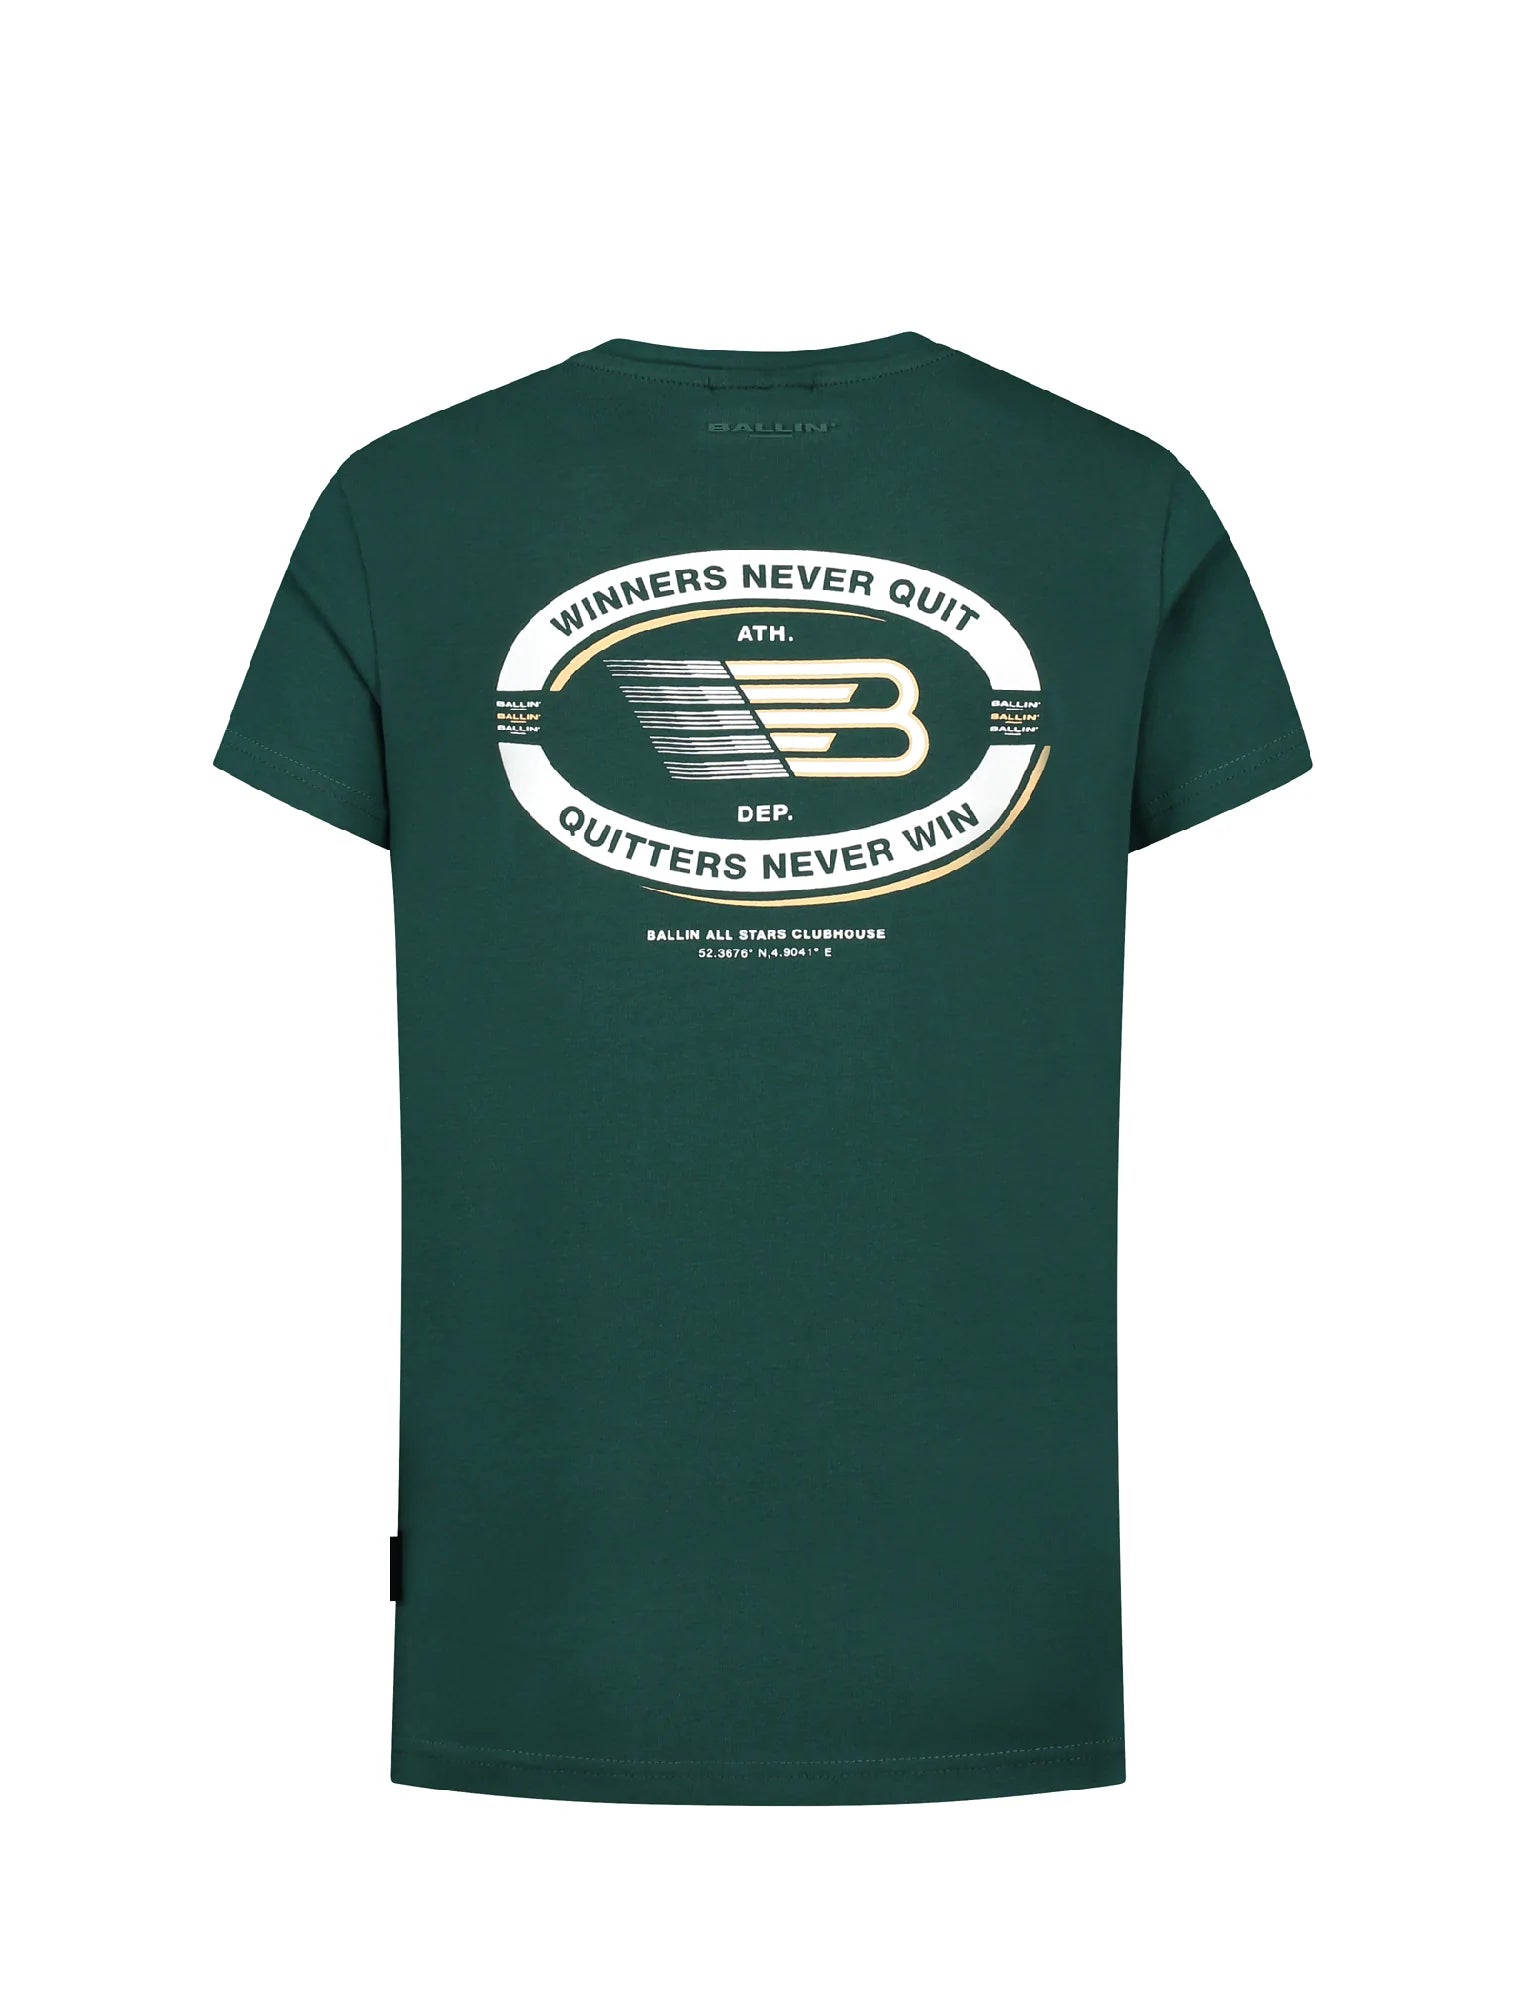 Unisexs T-shirt van Ballin Amsterdam in de kleur Green in maat 176.